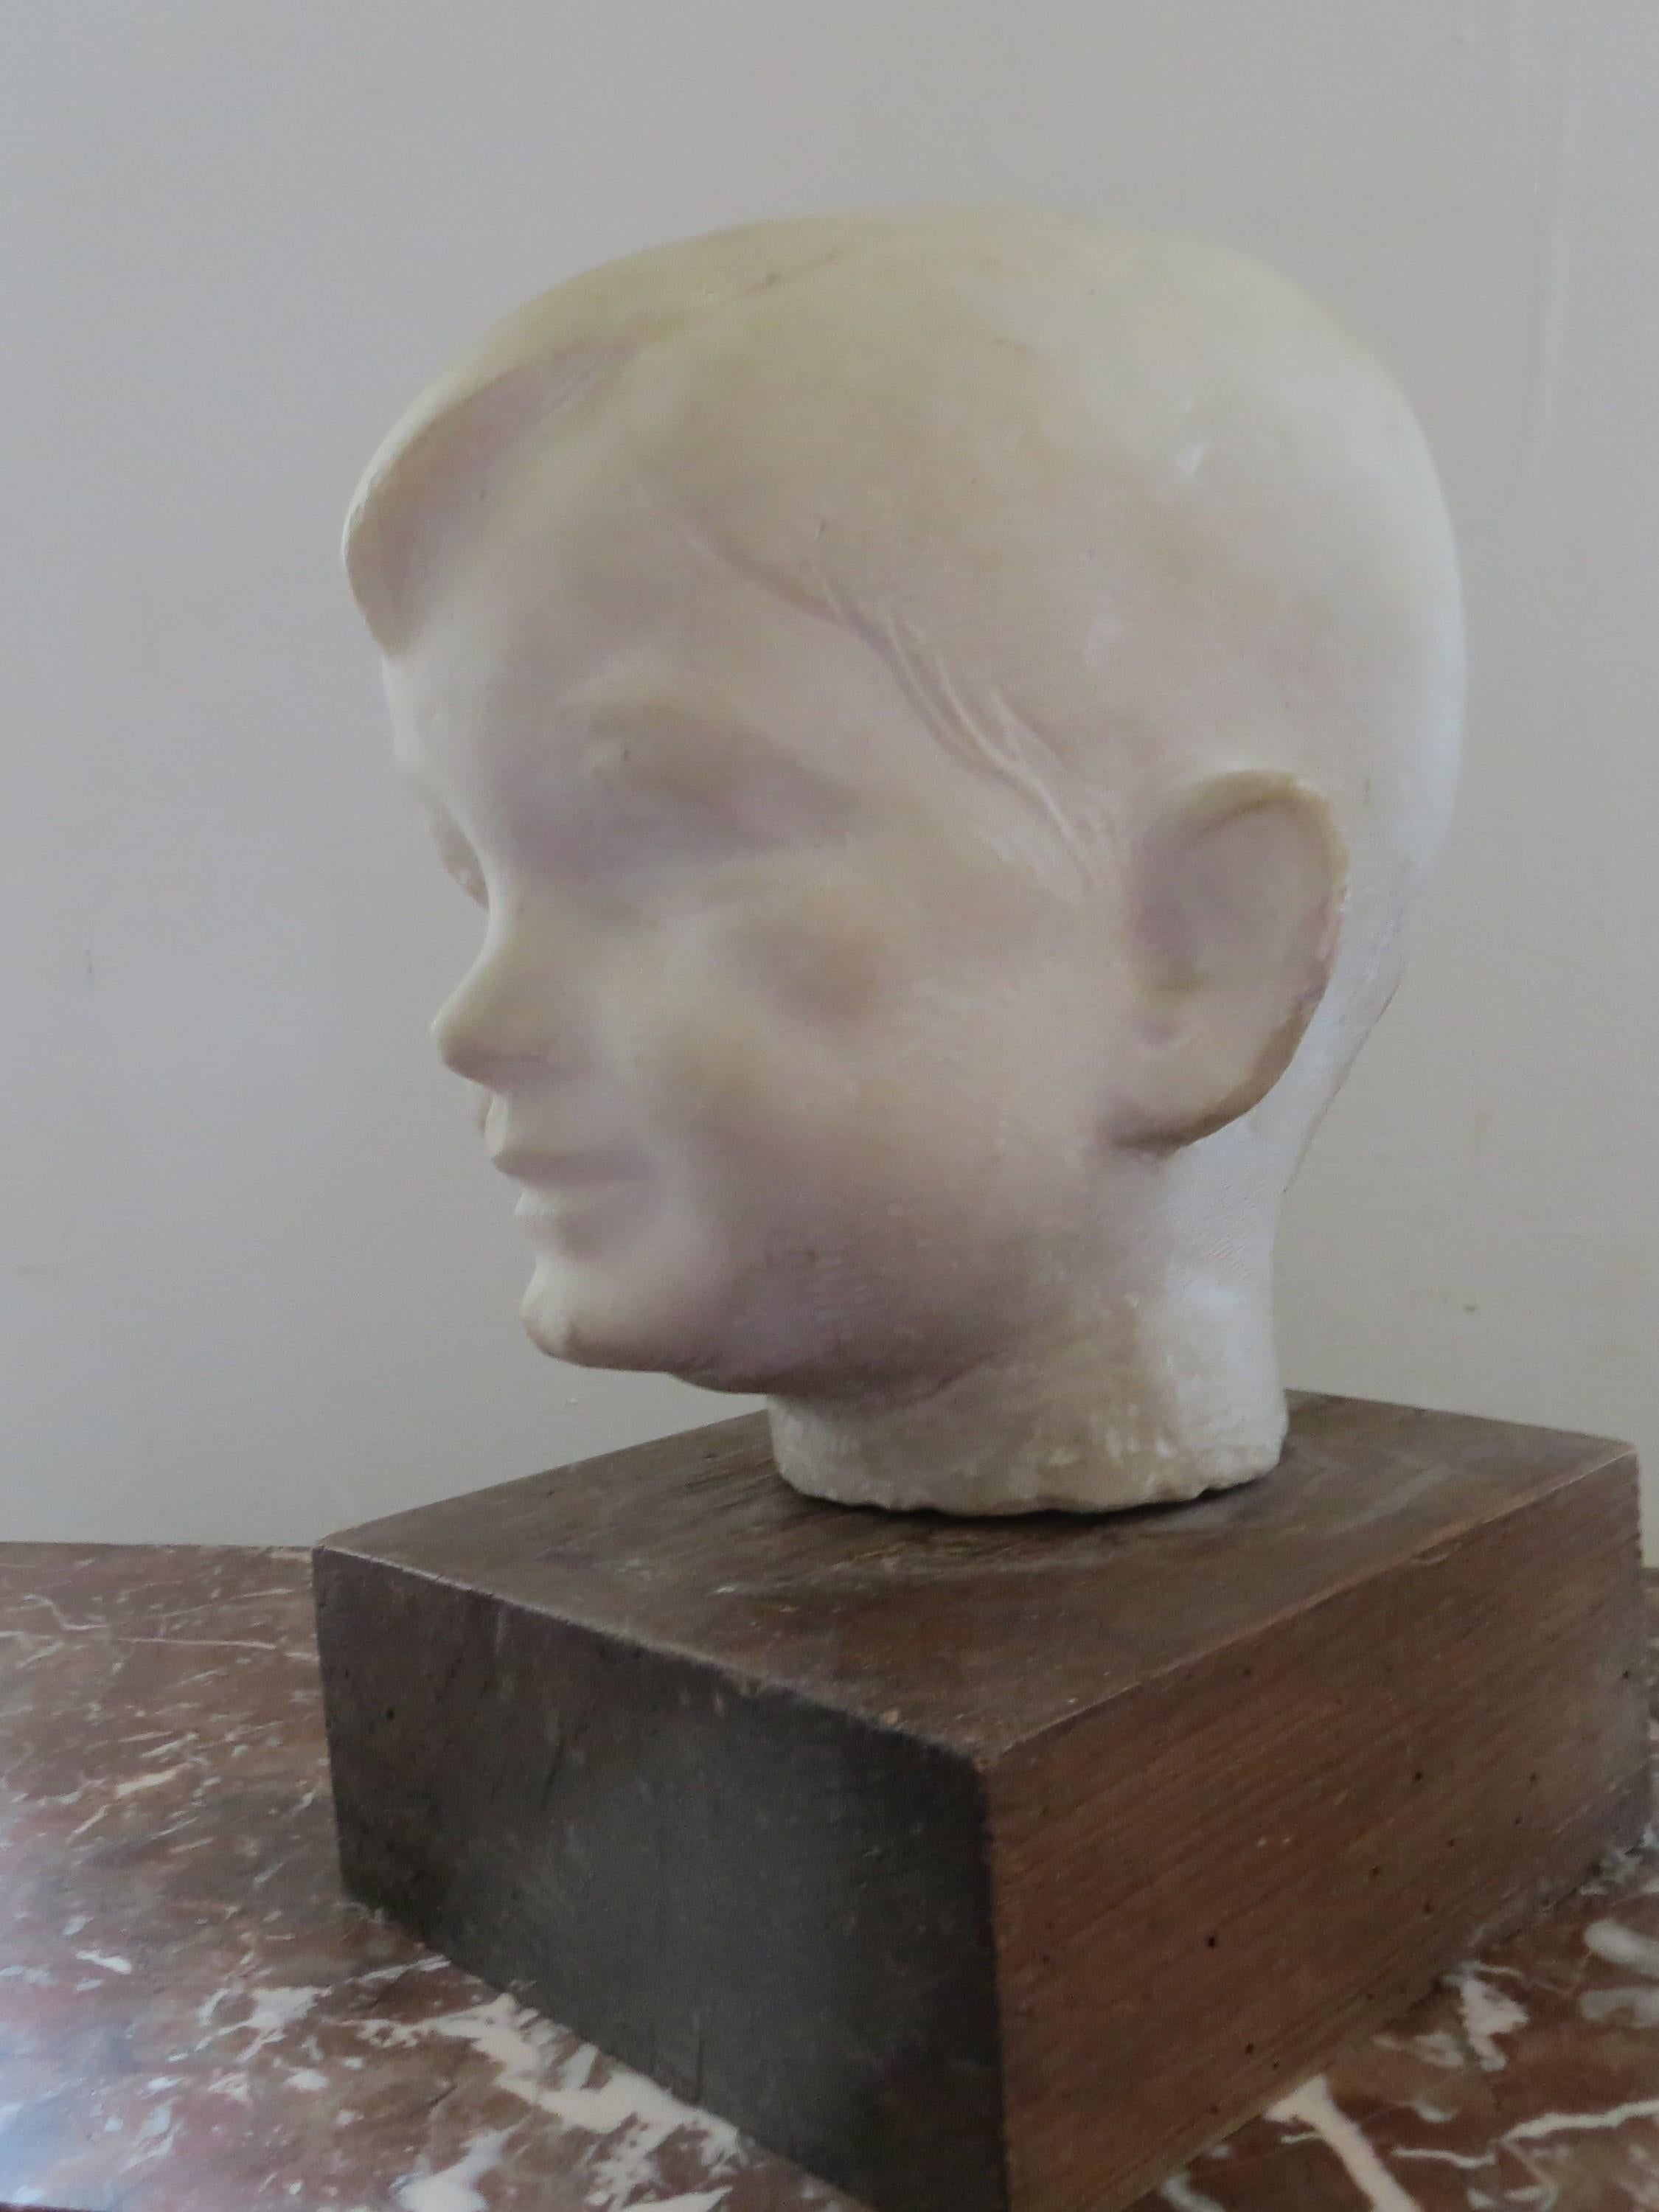  Portrait boy  - Sculpture by Unknown